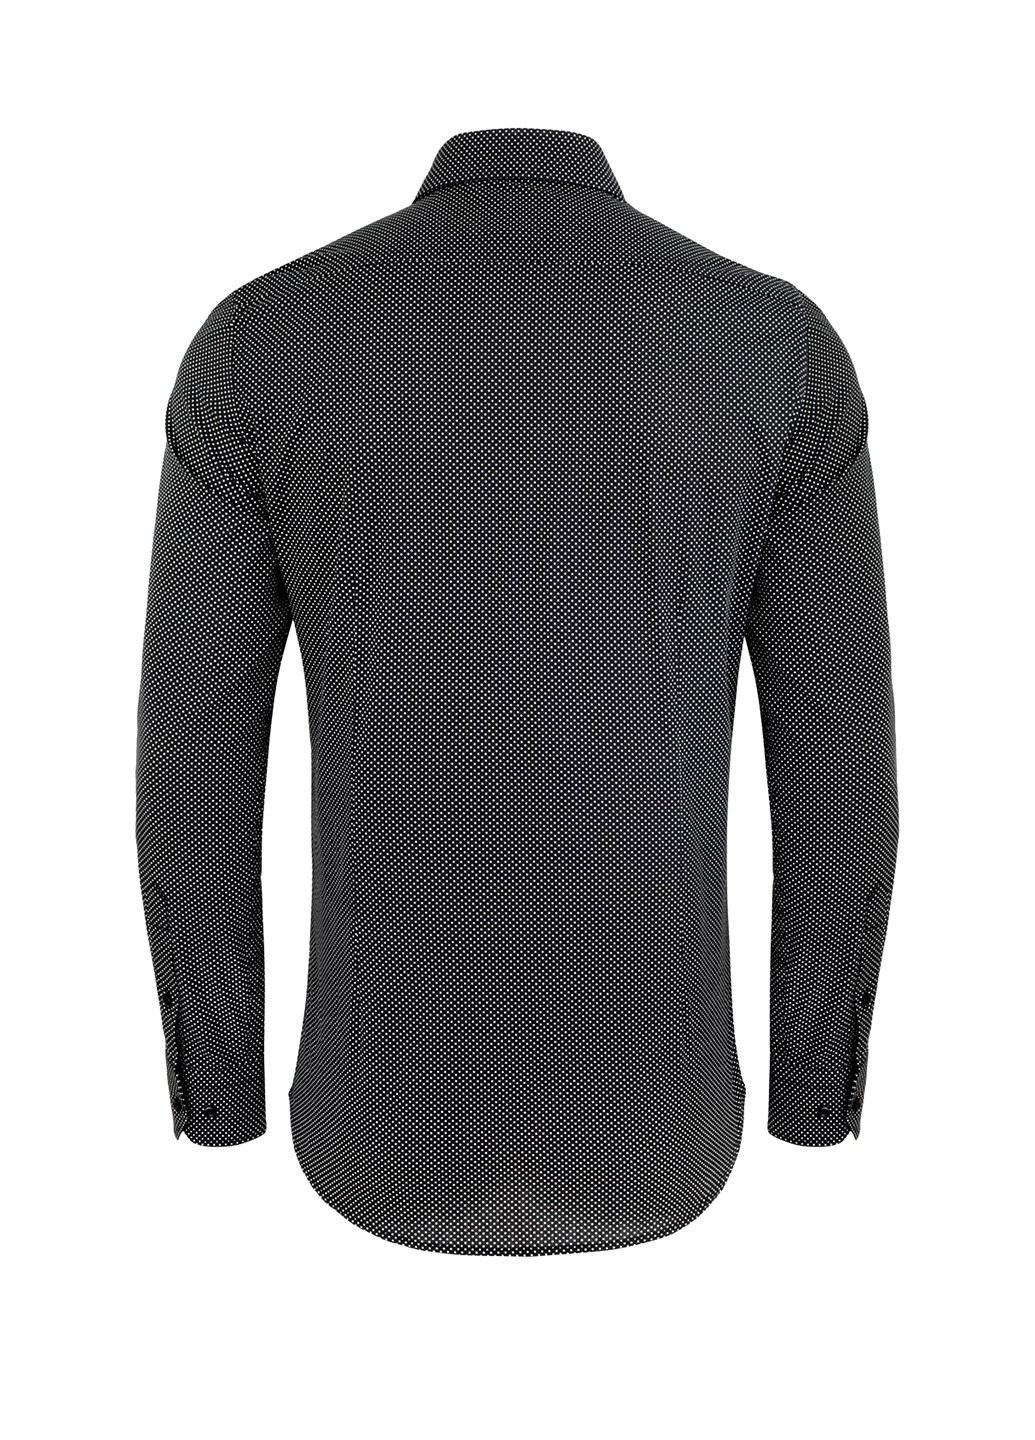 Черная кэжуал рубашка в горошек Pako Lorente с длинным рукавом